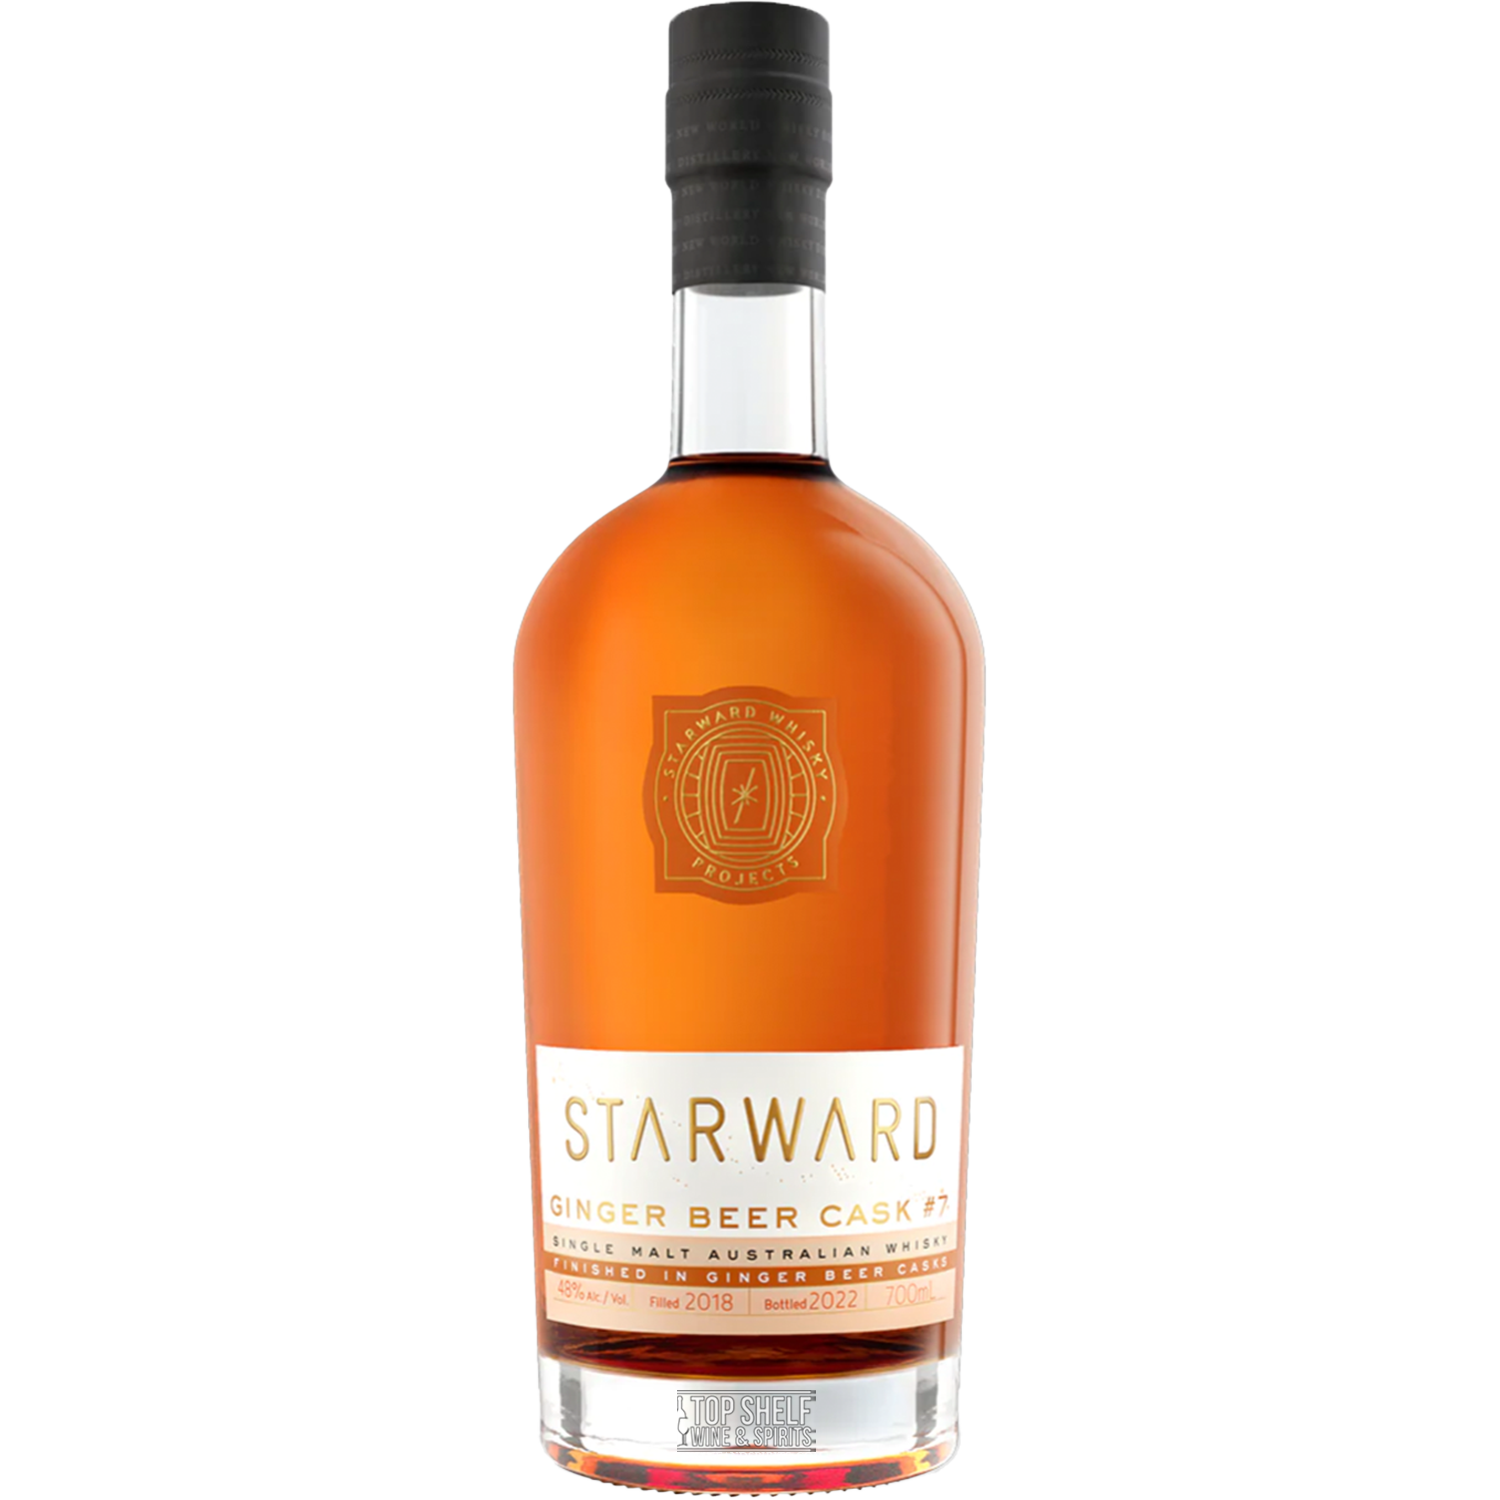 Starward Ginger Beer Cask #7 Single Malt Whisky